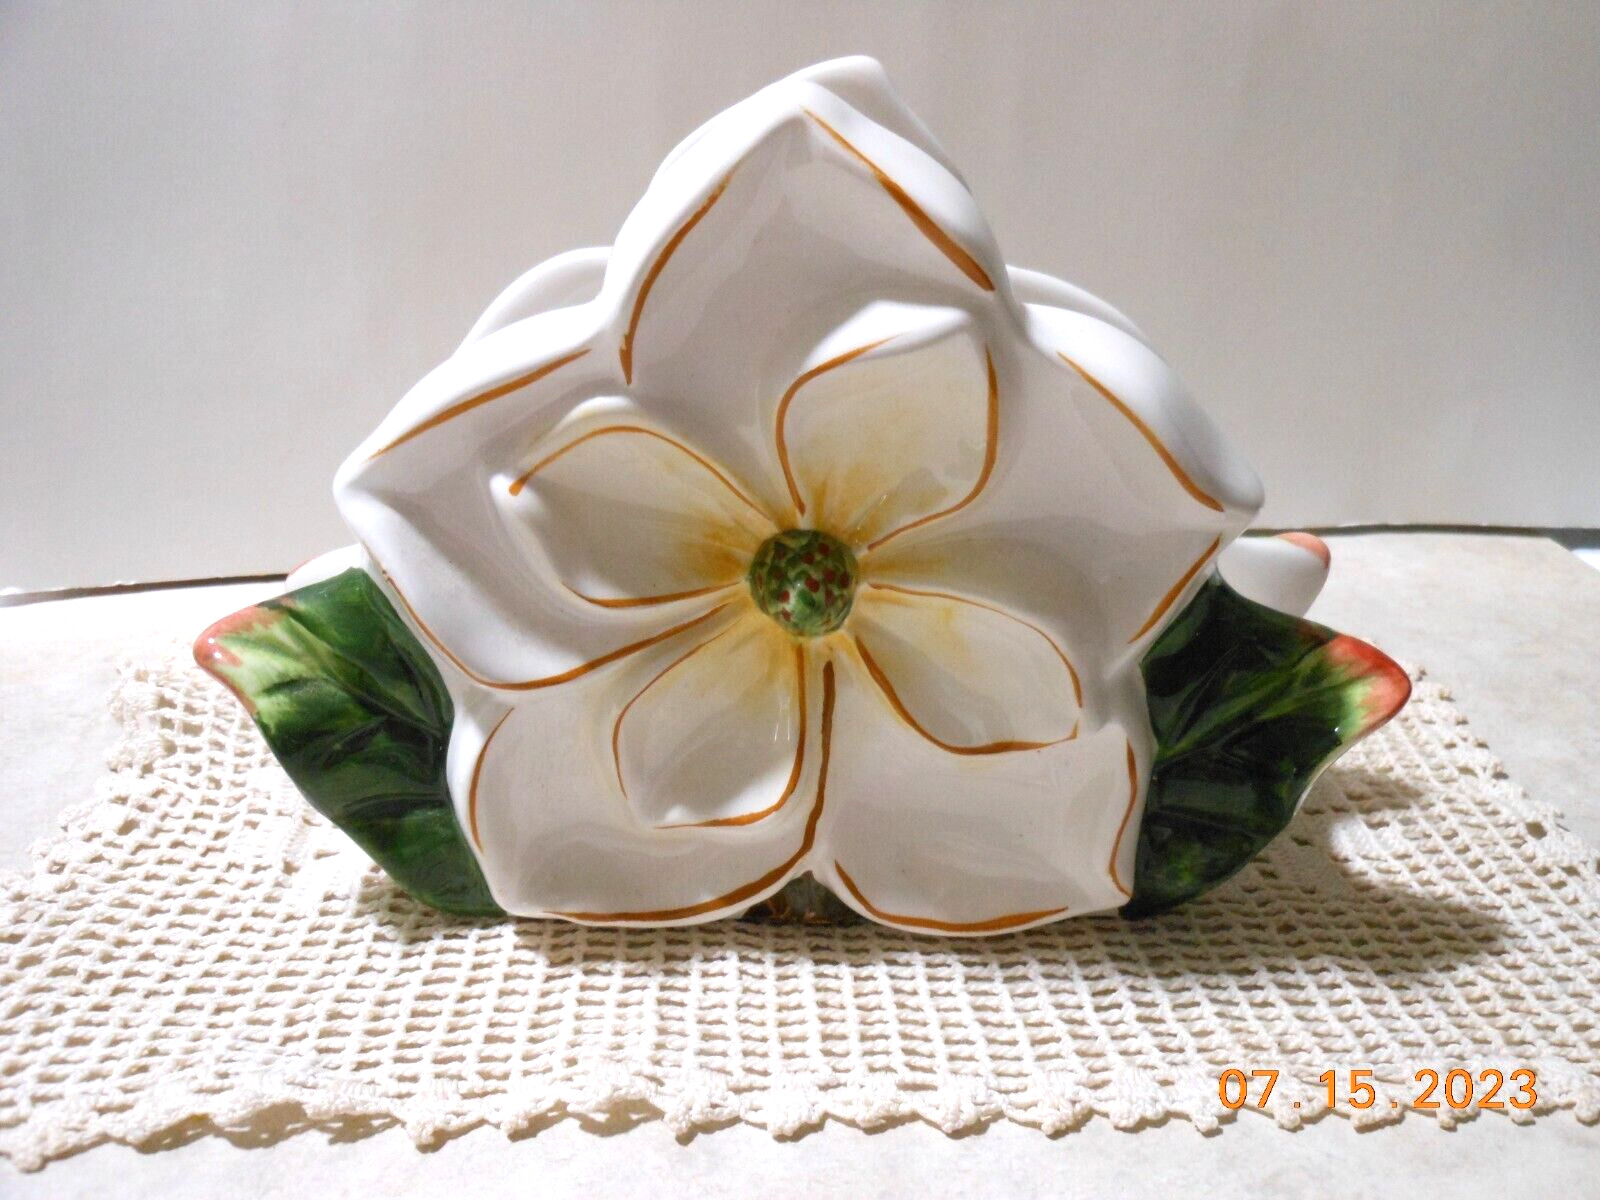 Vintage 1997 Ceramic Magnolia Napkin Holder 3D Raised Relief Design L@@K